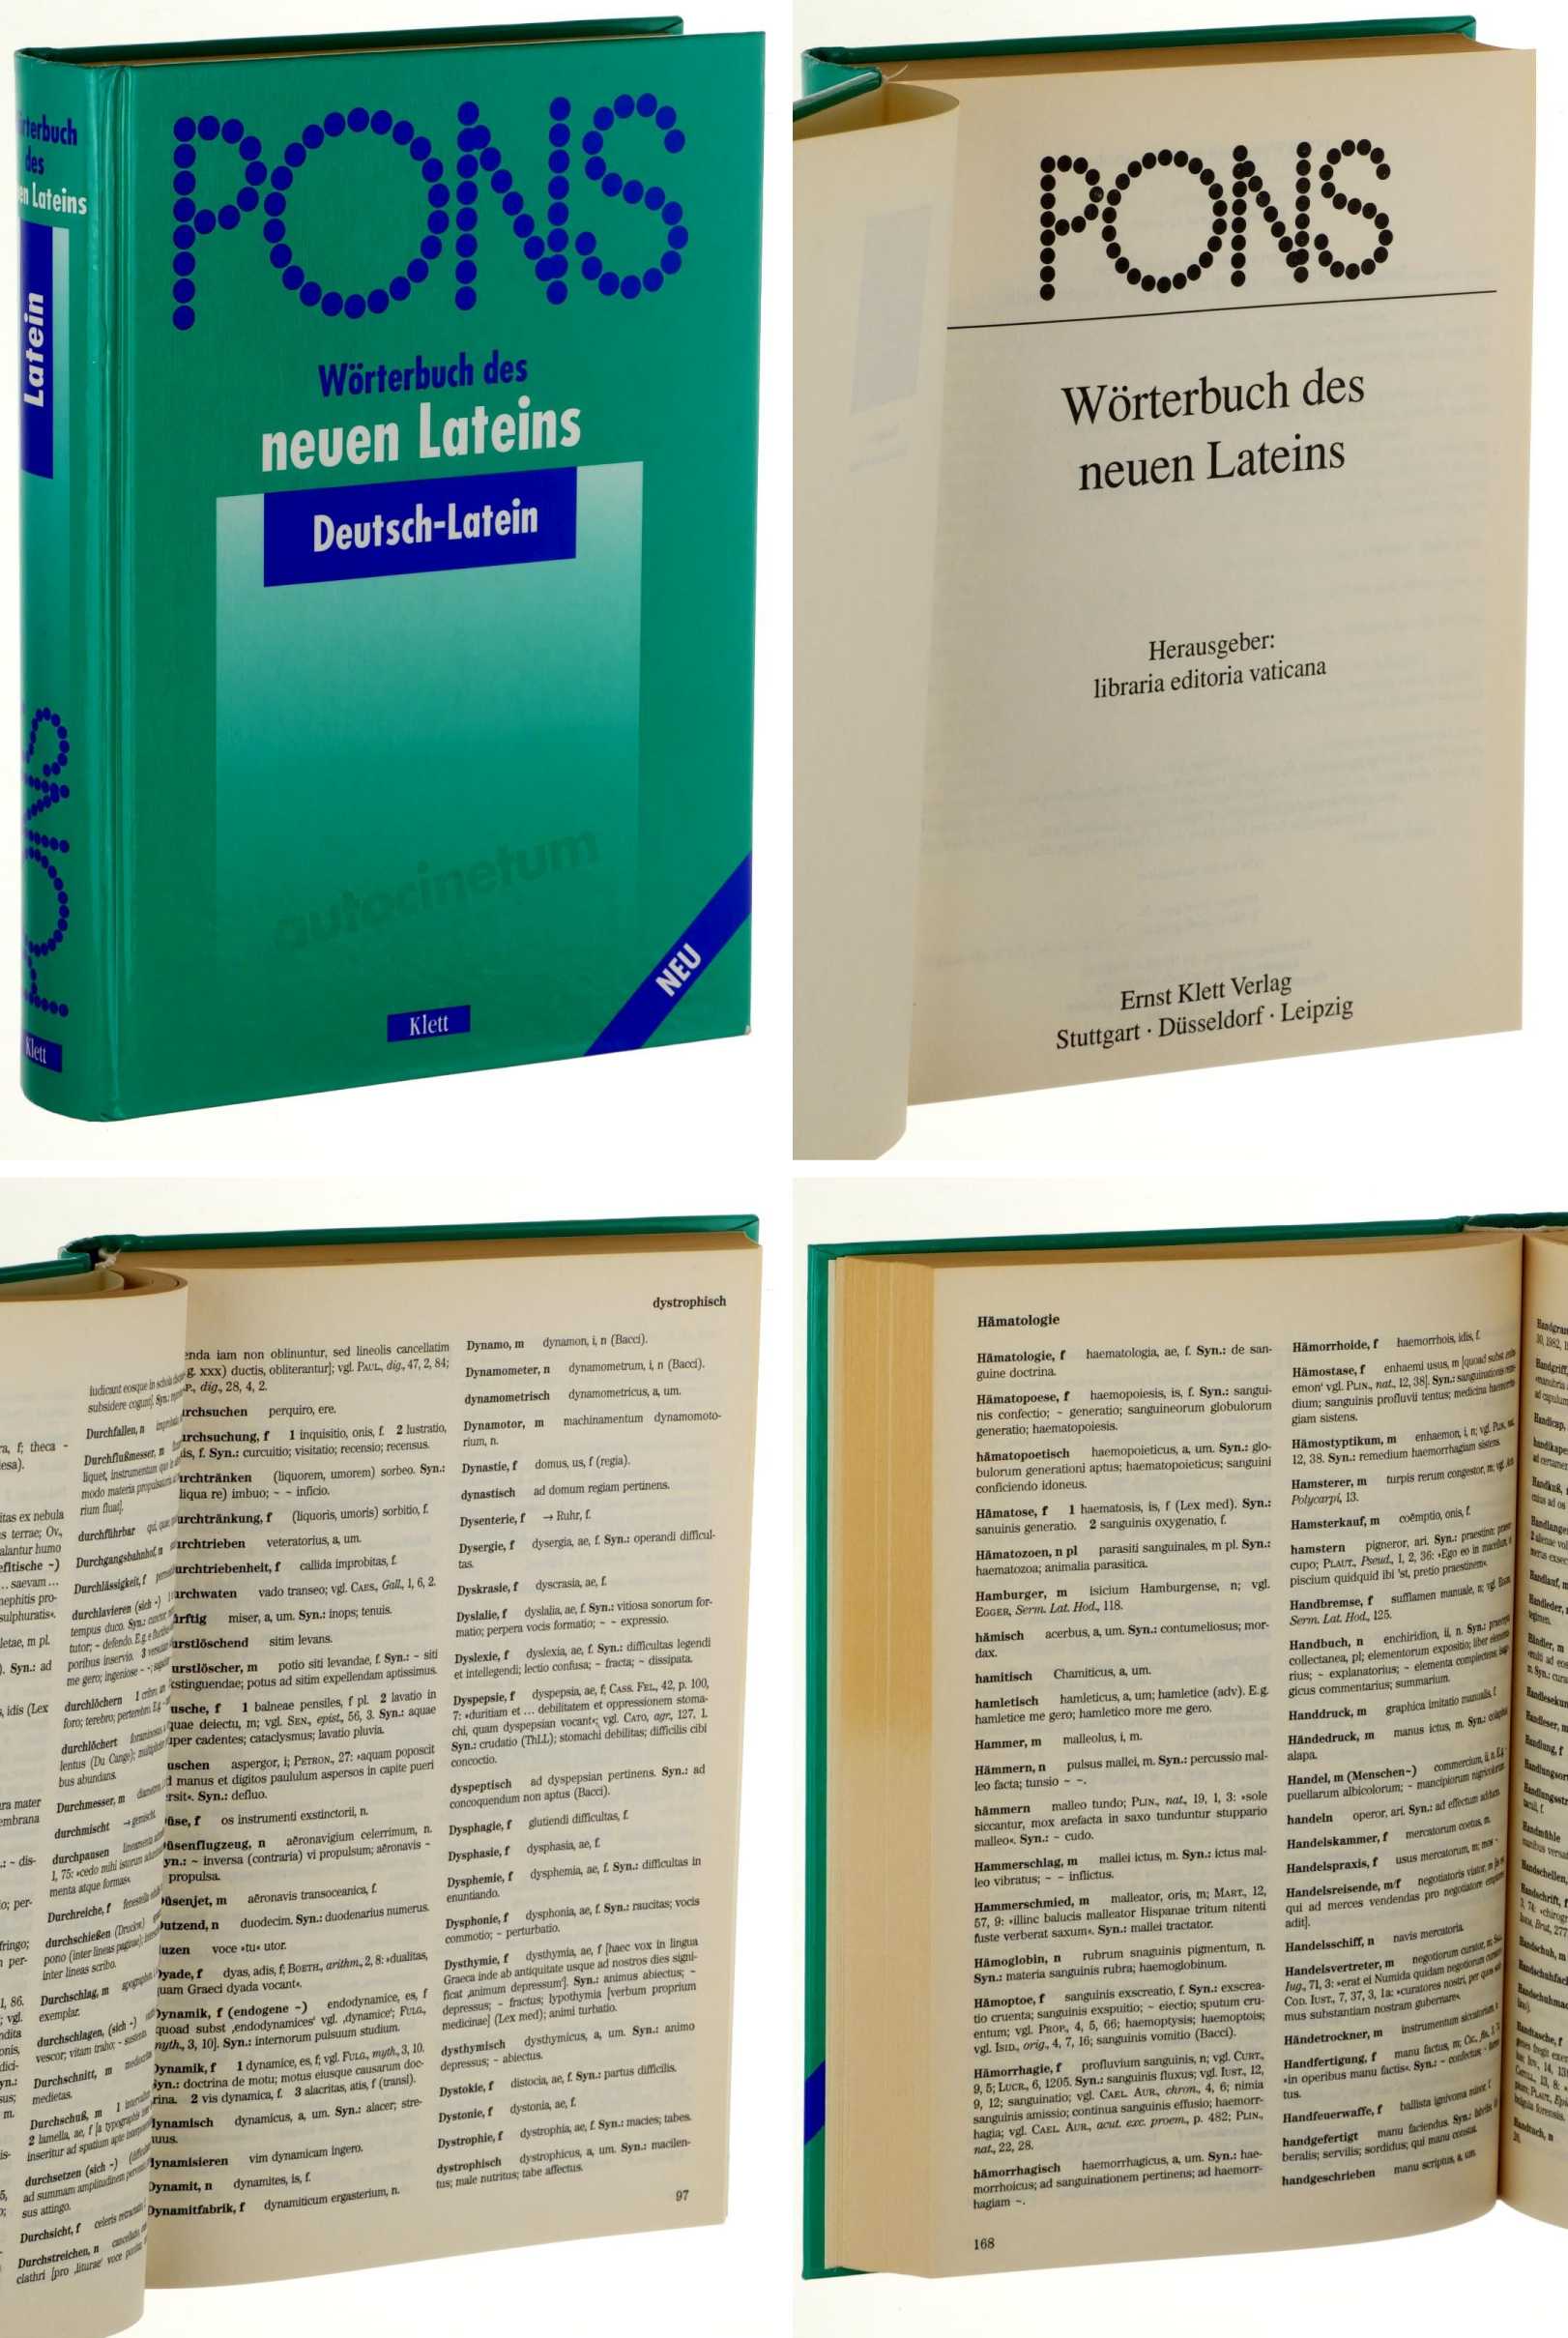   PONS-Wörterbuch des neuen Lateins. [Deutsch-Latein]. Hrsg.: Libraria Editoria Vaticana. [Aus dem Ital. von Stefan Feihl, Carmen Grau u.a.]. 